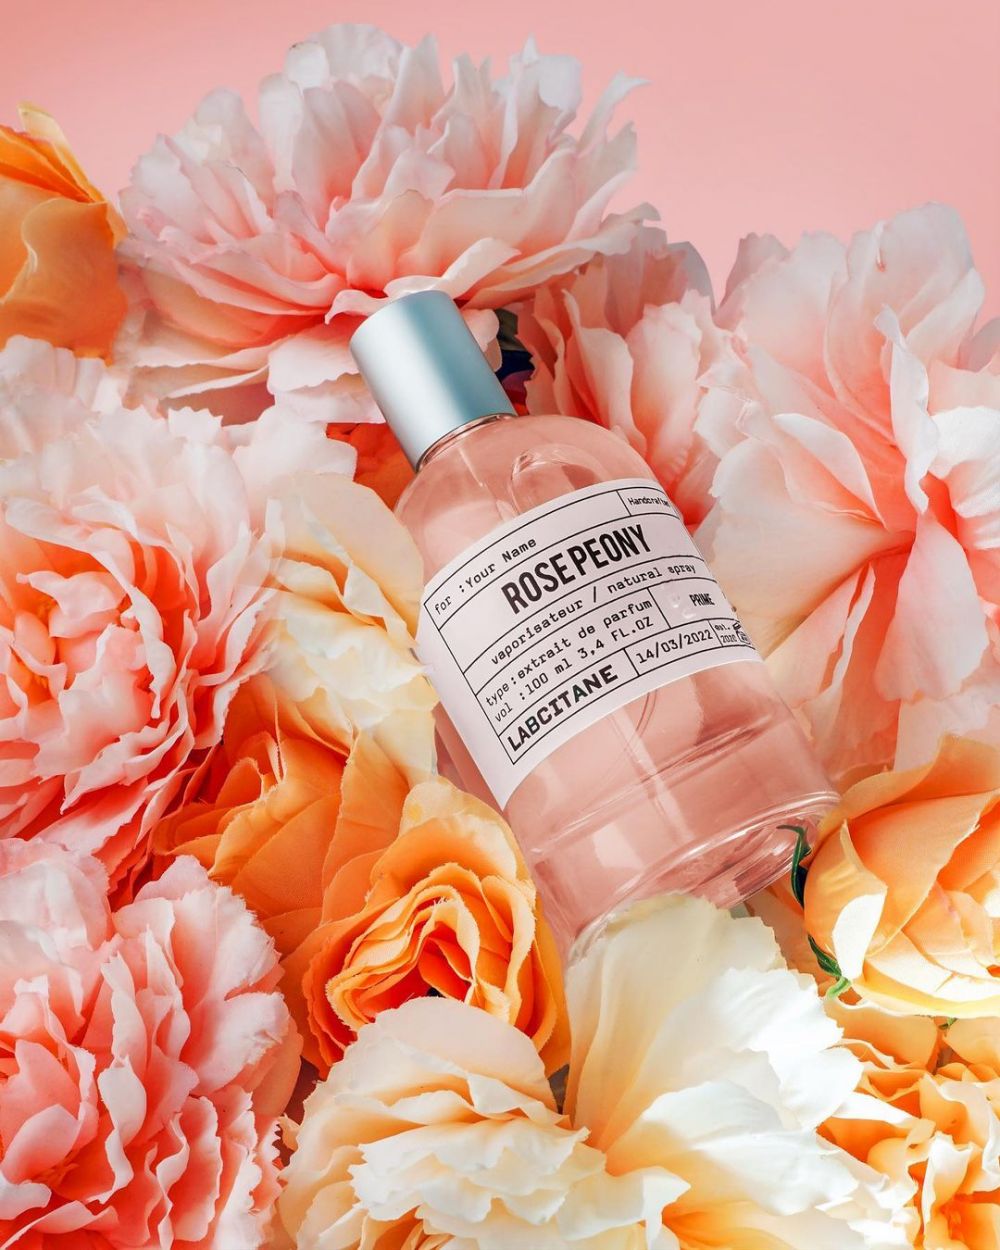 5 Rekomendasi Parfum Lokal Beraroma Floral, Harga Mulai Rp30 Ribu!